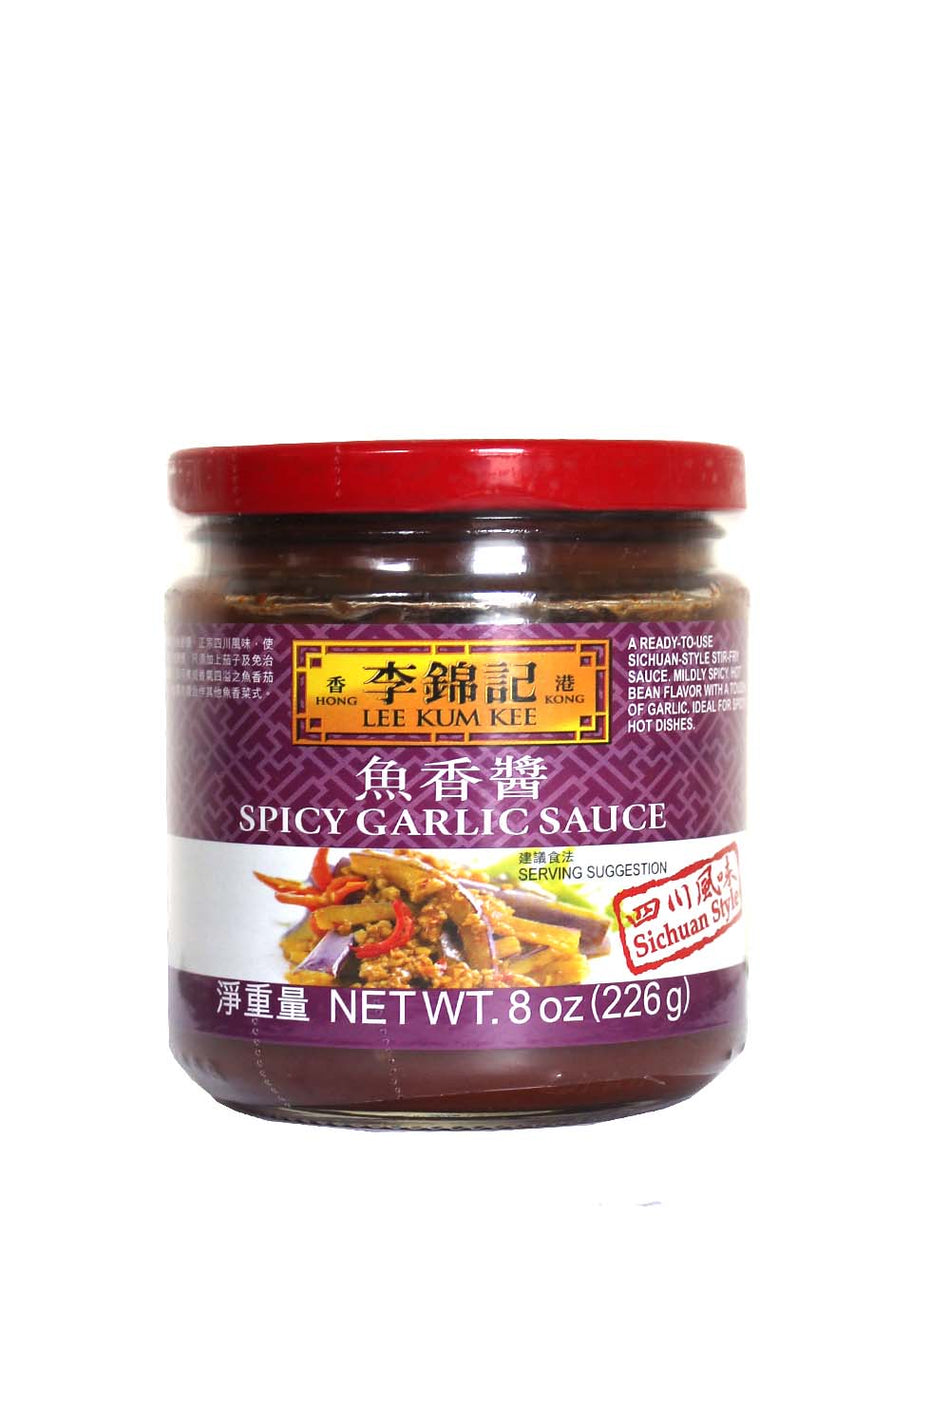 Lee Kum Kee Spicy Garlic Sauce